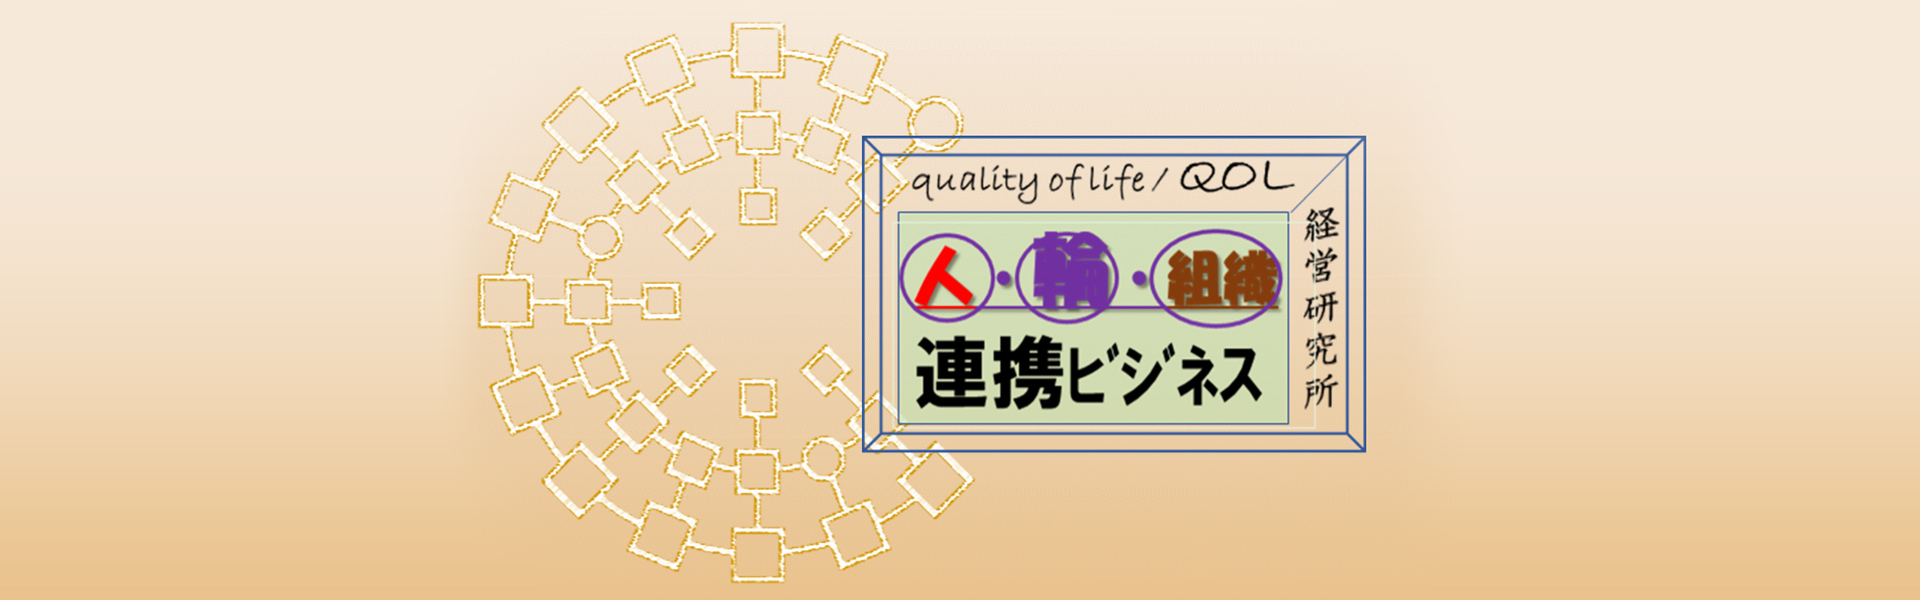 人・輪・組織 連携ビジネス quality of life QOL 経営研究所